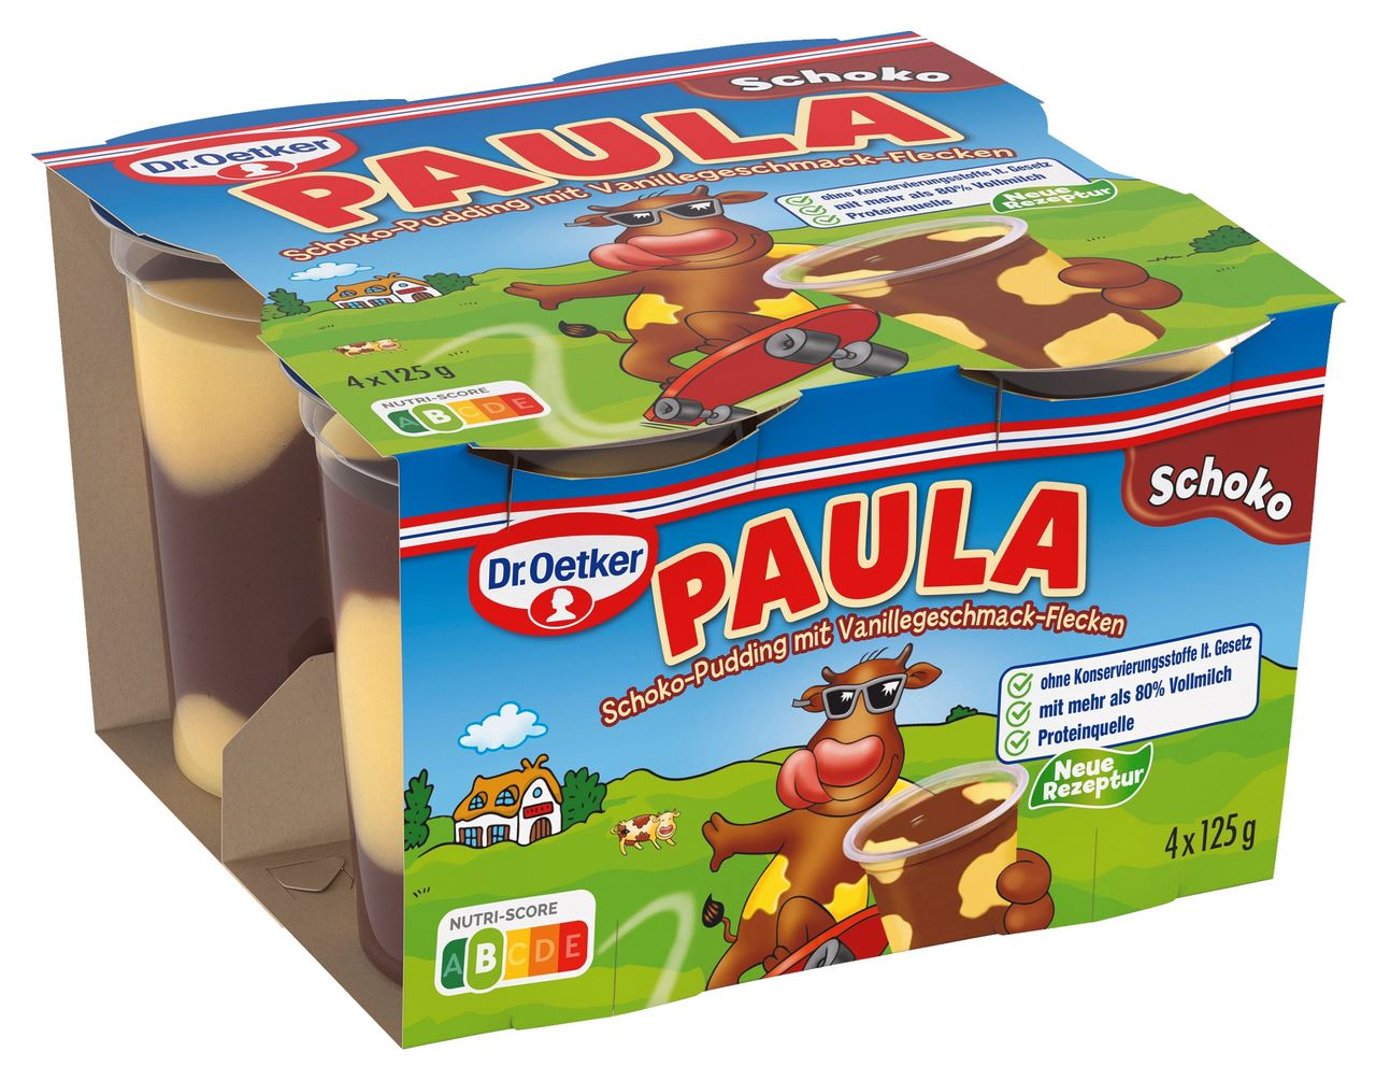 Paula - Pudding mit Flecken Schoko mit Vanille 4 x 125 g, 3,9 % Fett - 500 g Packung